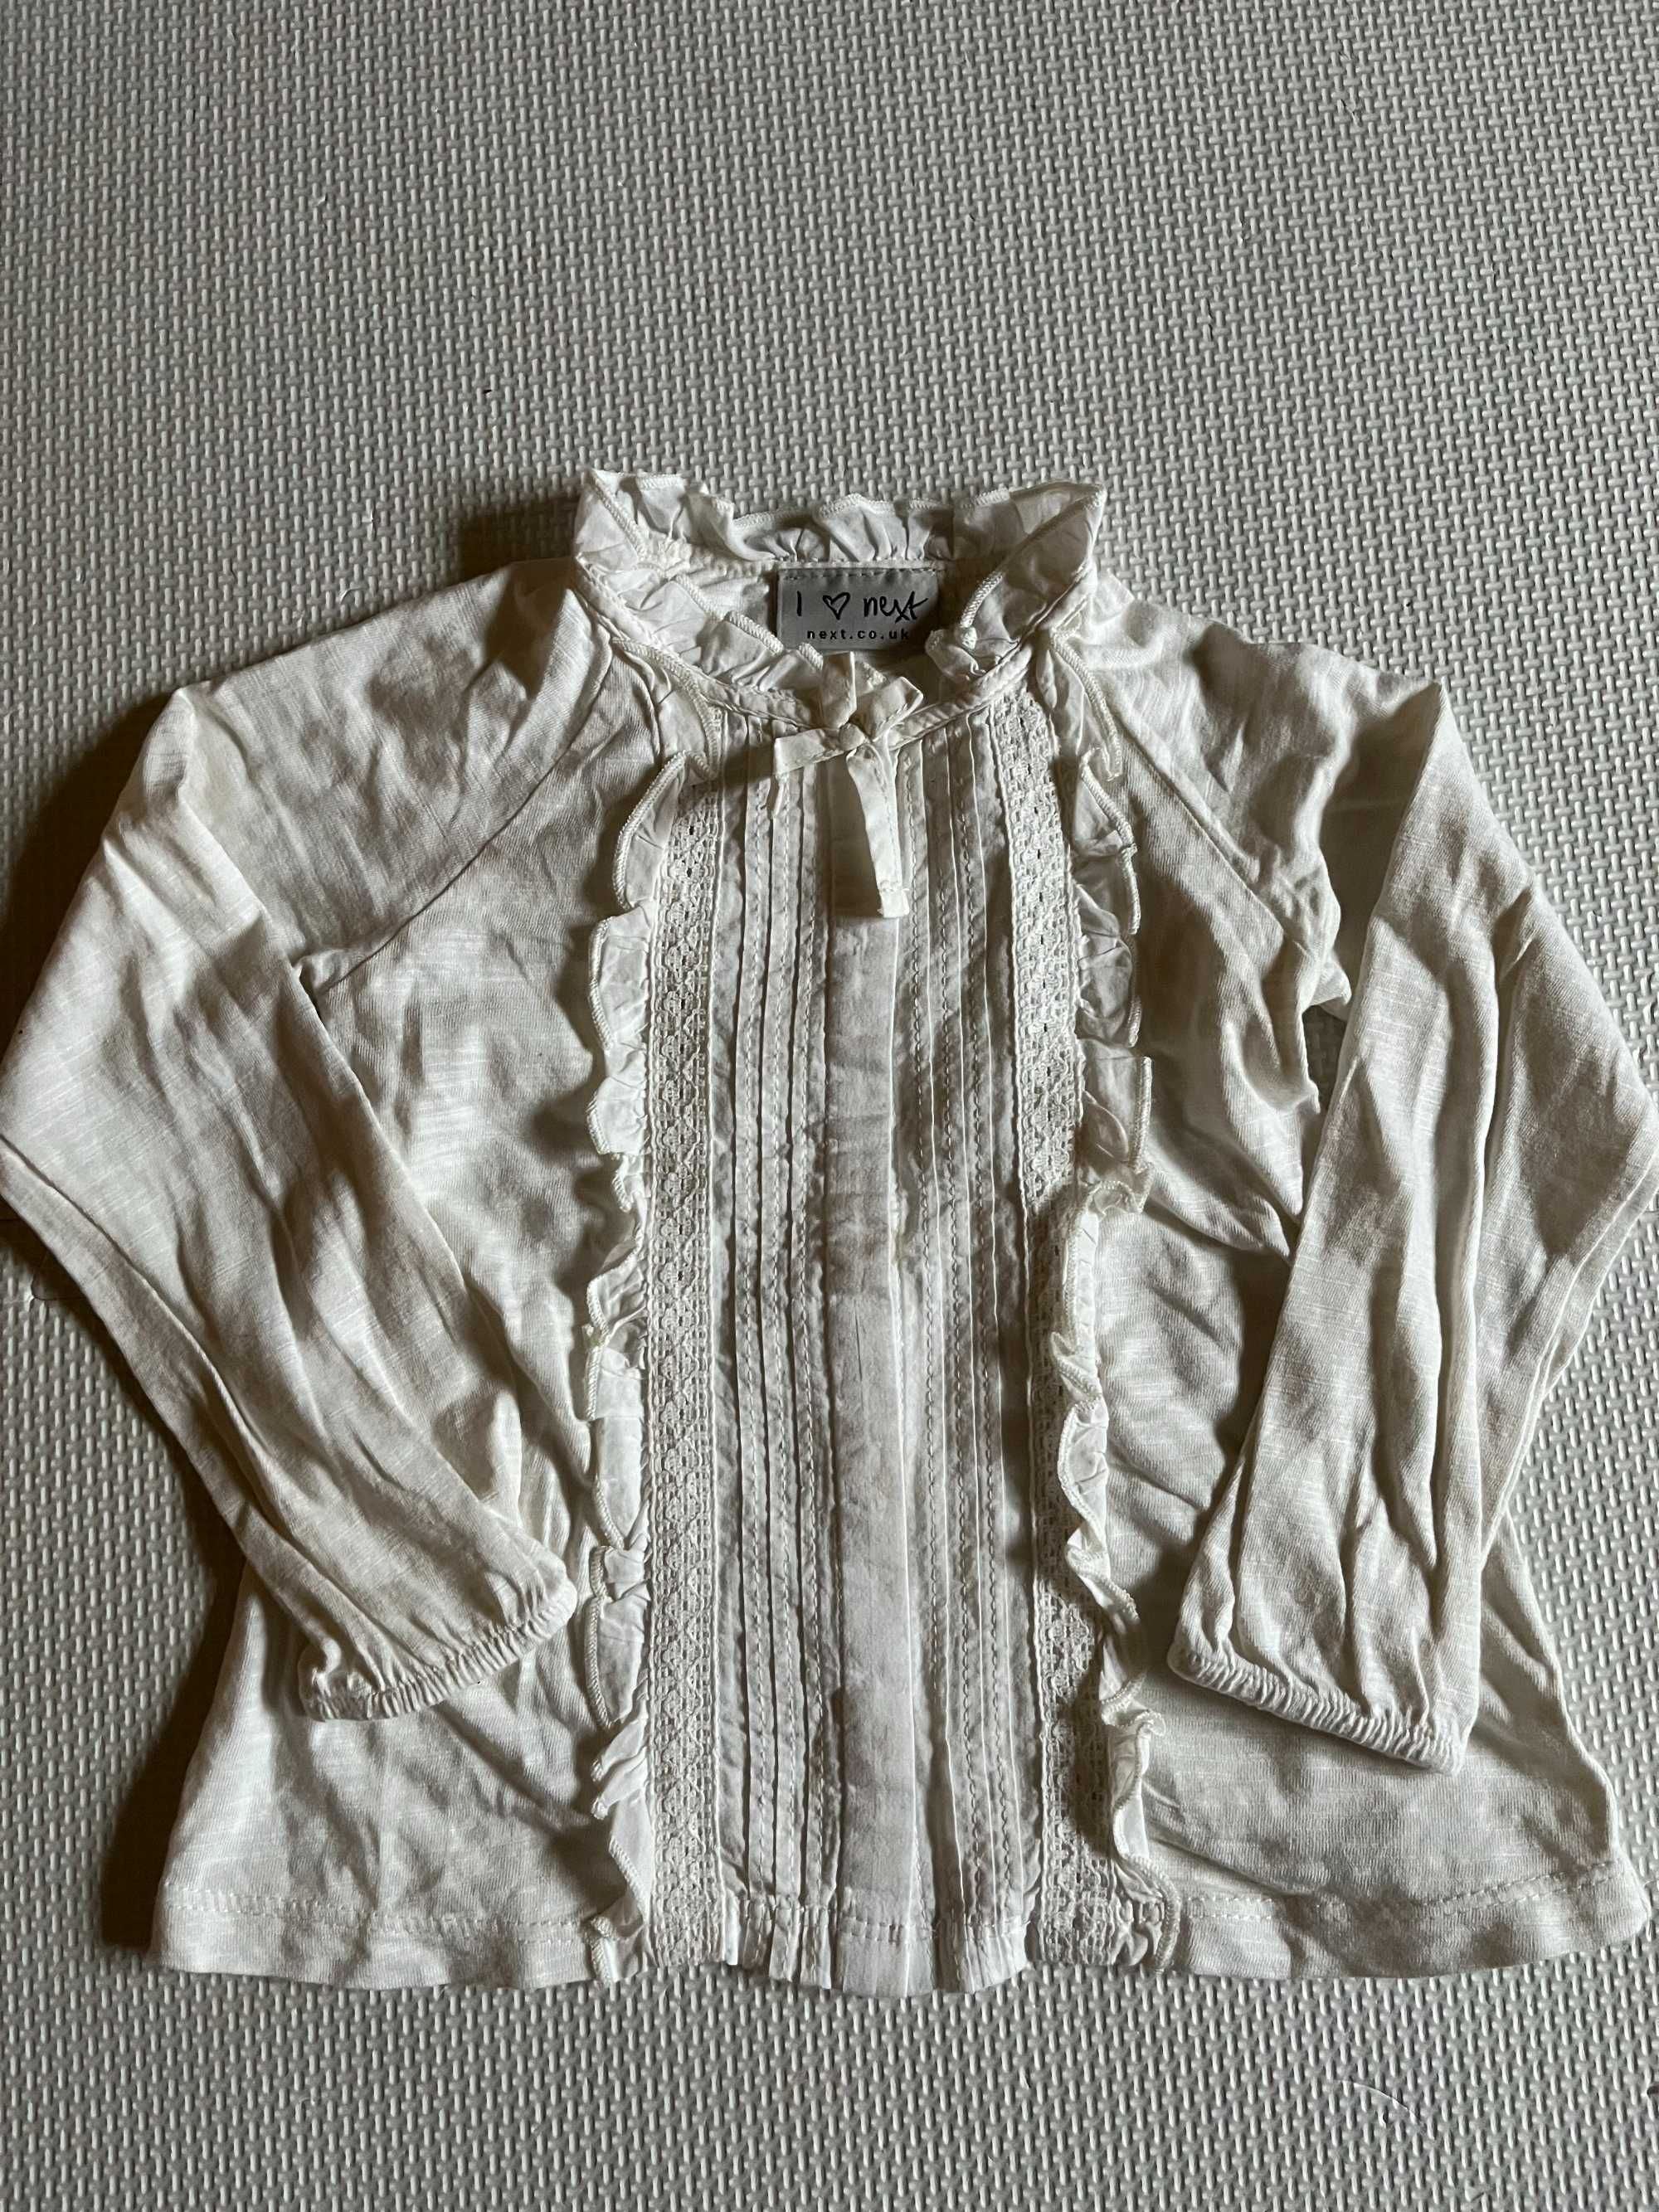 Koszula Next kremowa beżowa rozmiar ok. 92-98